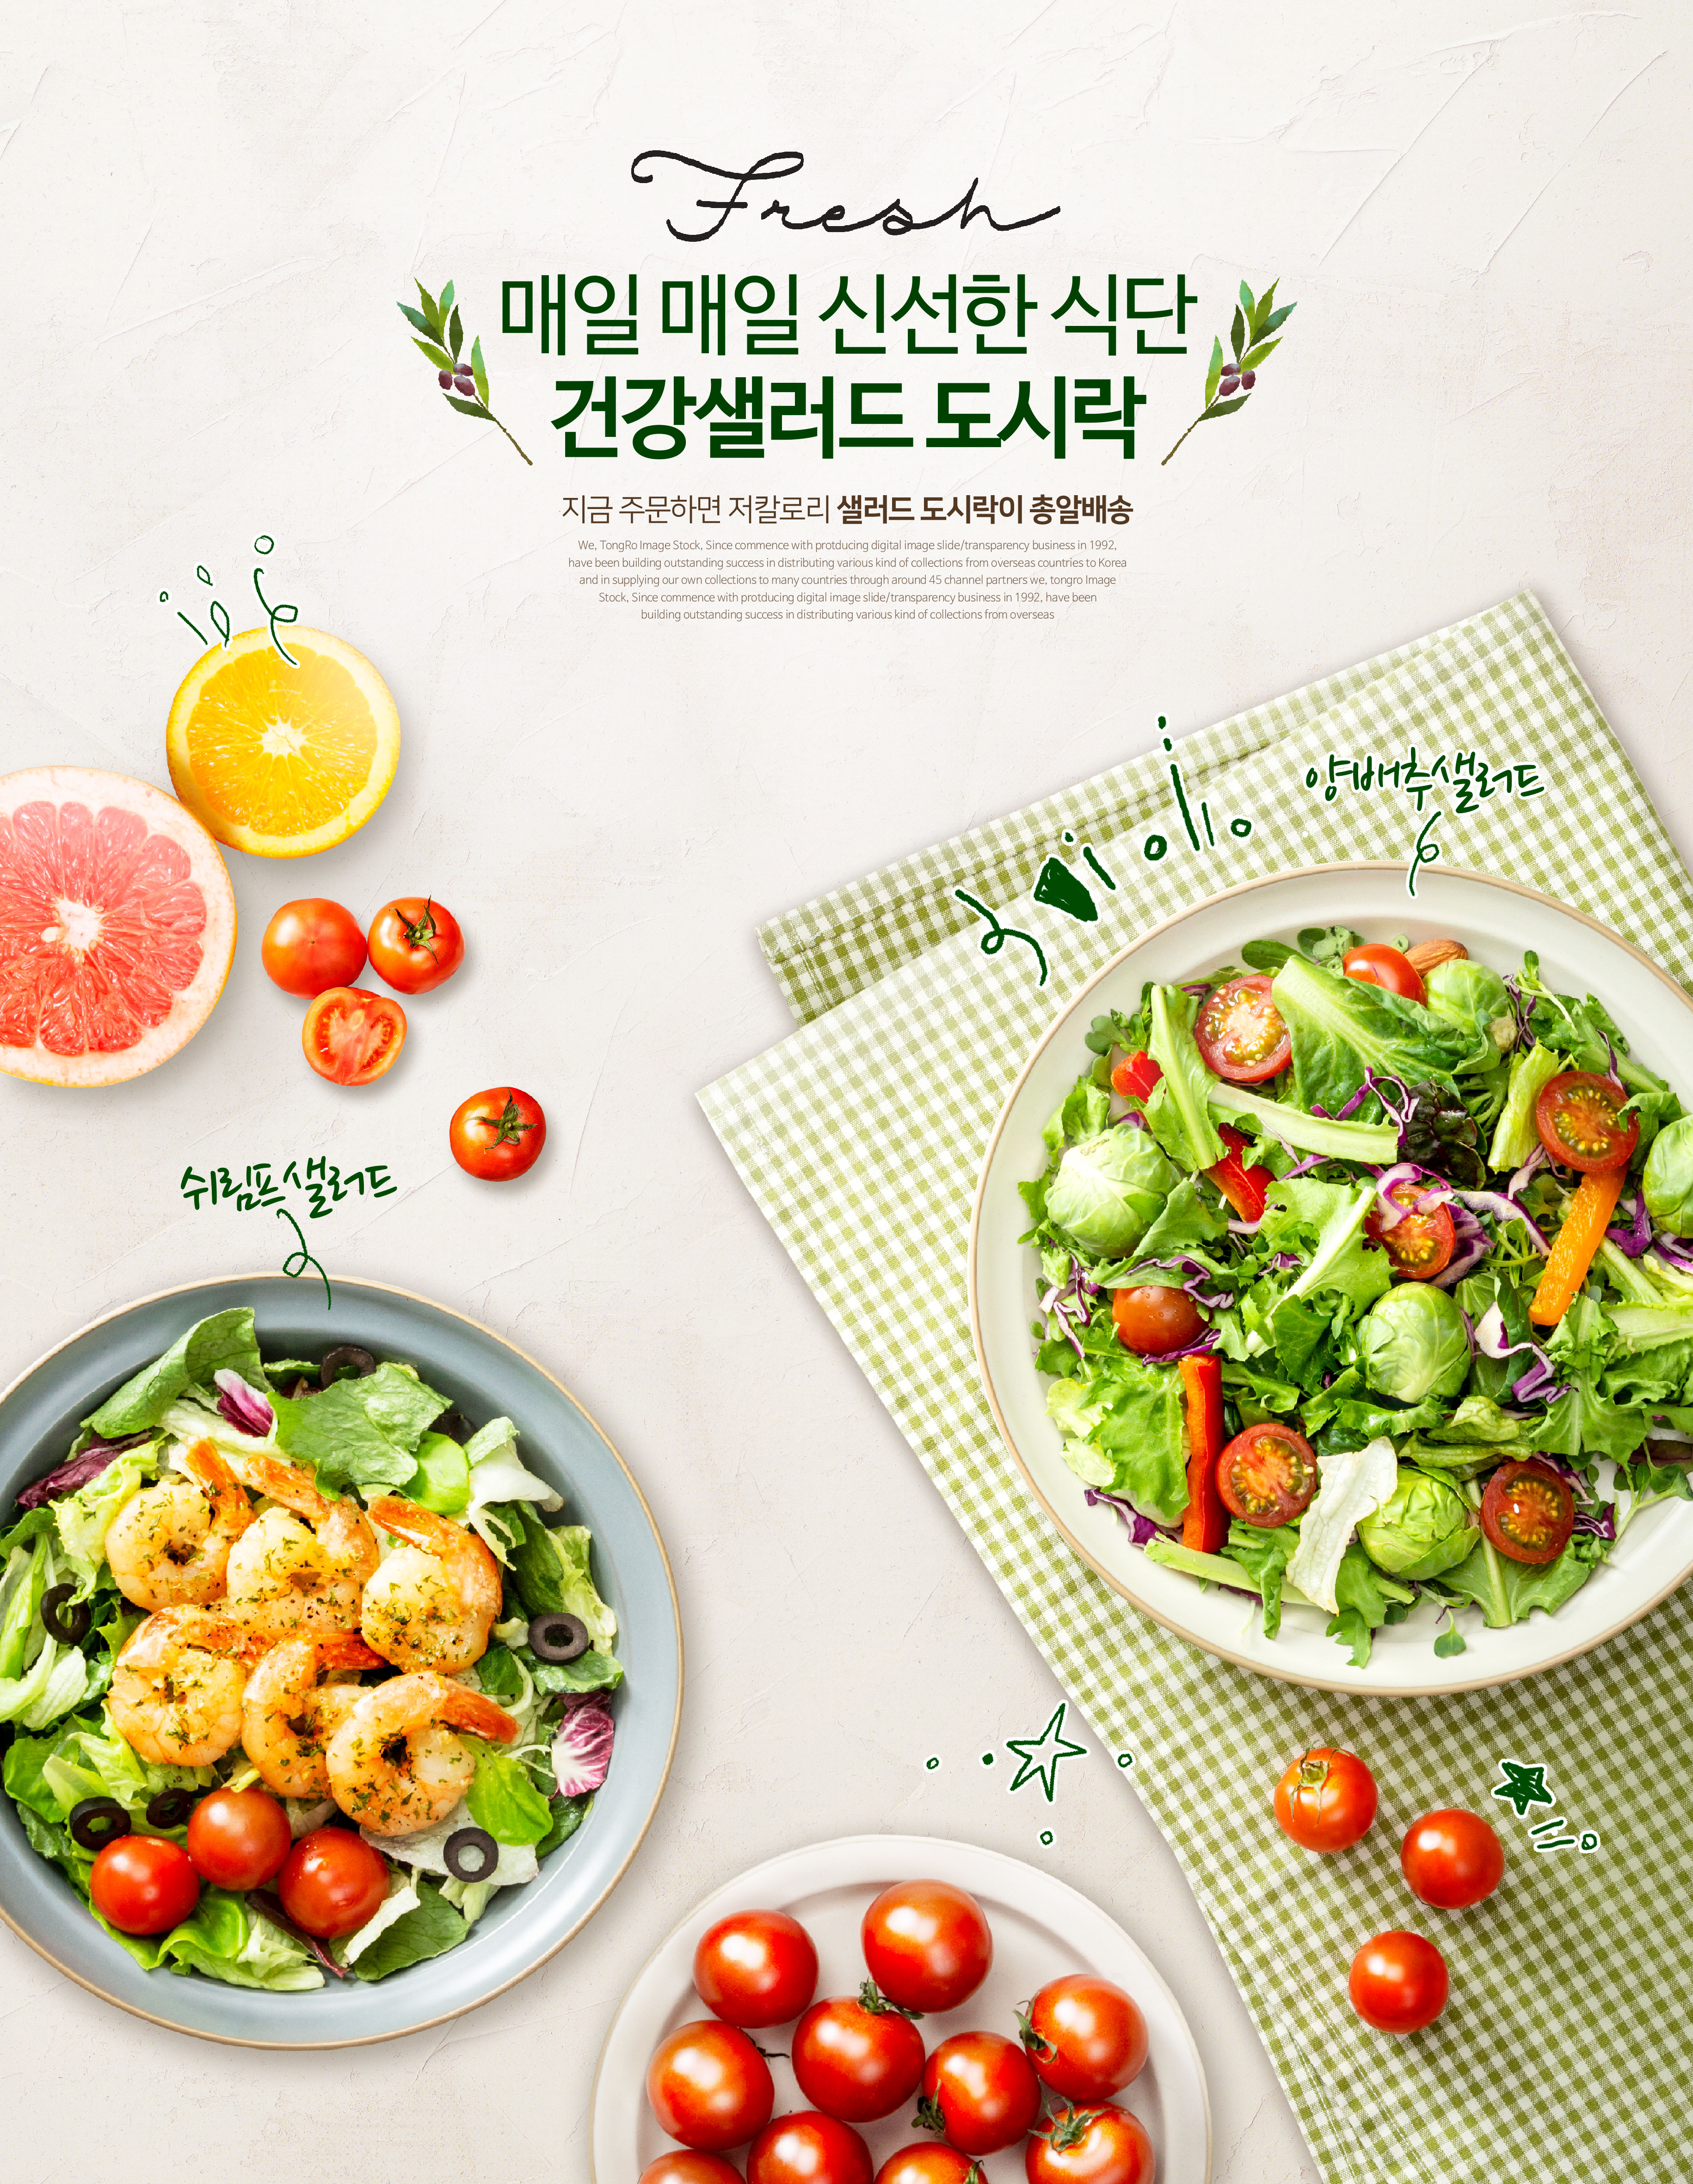 低卡路里健康沙拉食品广告海报设计模板插图